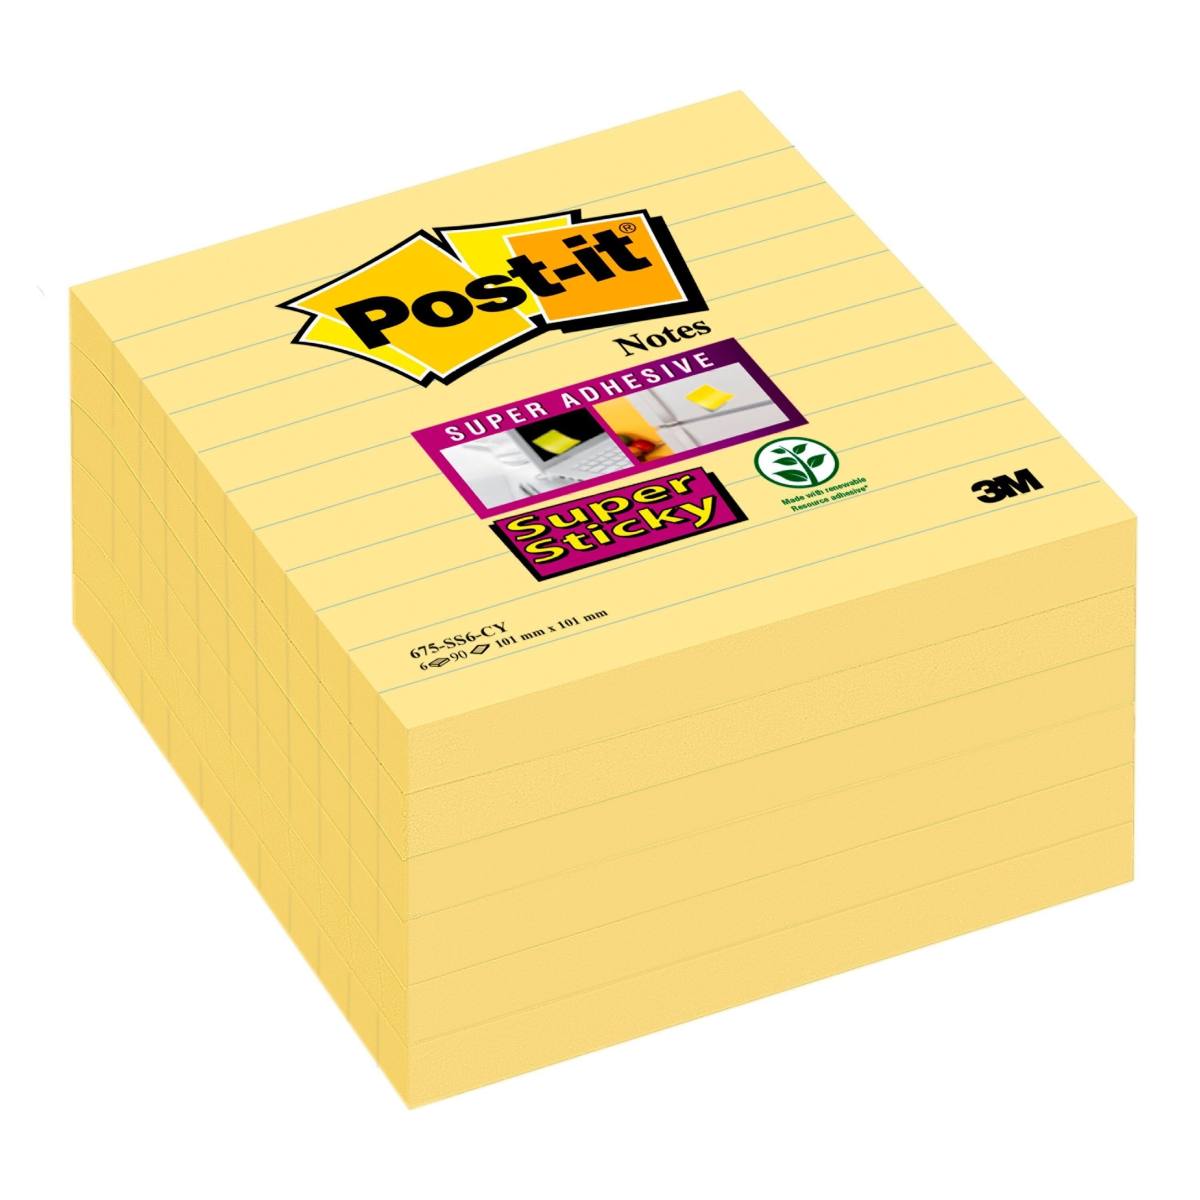 3M Post-it Super Sticky Notes 675-6SCY, 101 mm x 101 mm, giallo, 6 blocchetti da 90 fogli ciascuno